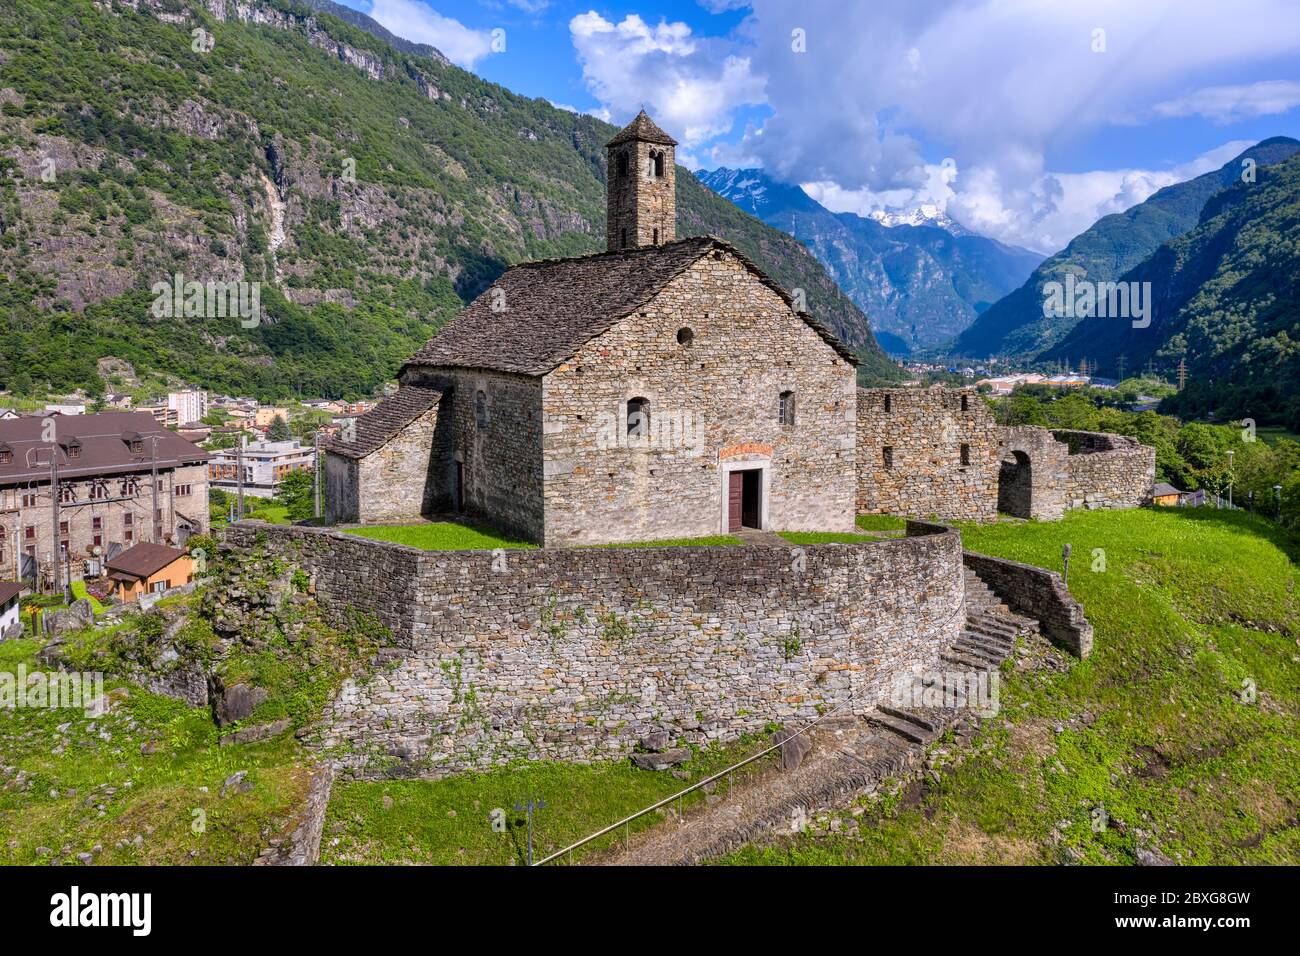 Historical romanesque style Santa Maria del Castello church on a hill in Leventina valley, Giornico, canton Ticino, swiss Alps mountains, Switzerland Stock Photo